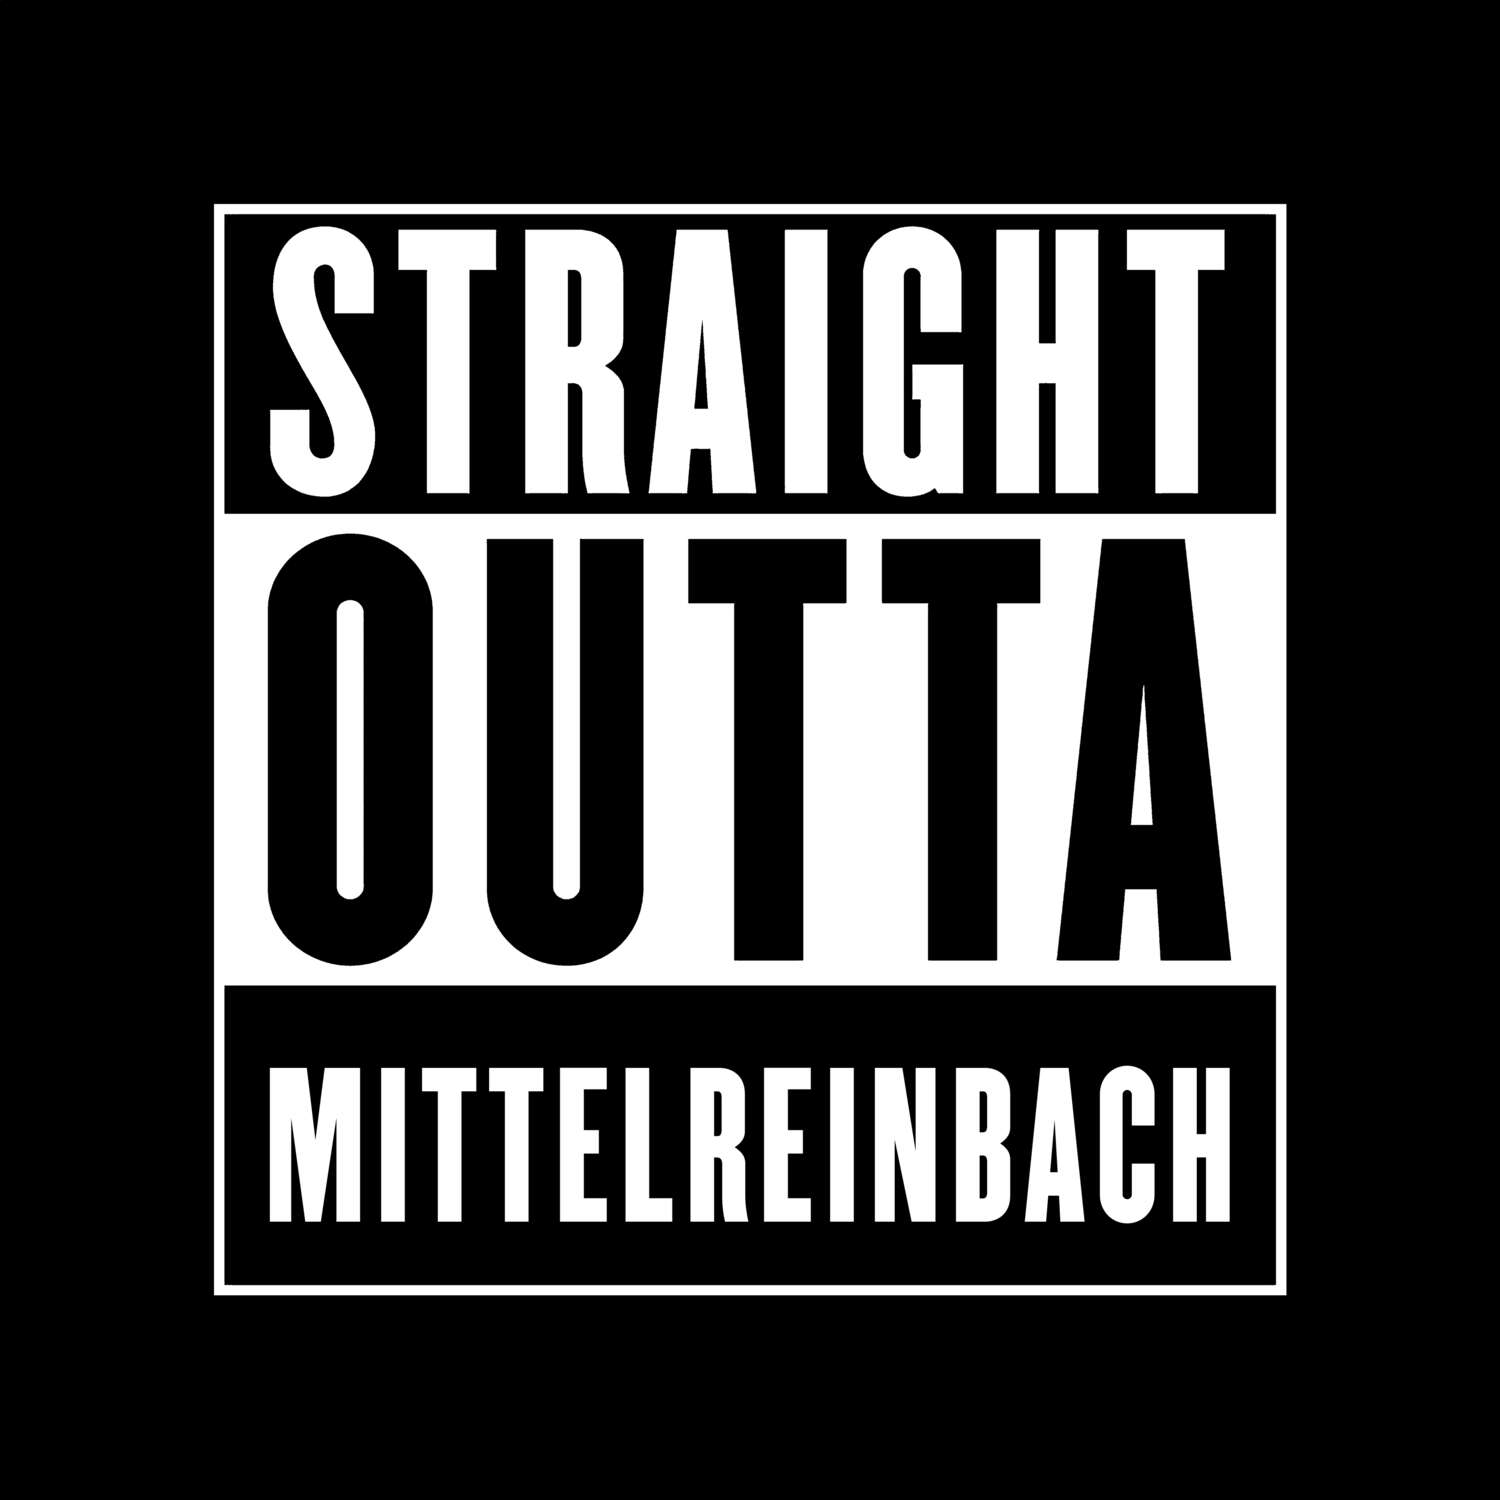 Mittelreinbach T-Shirt »Straight Outta«